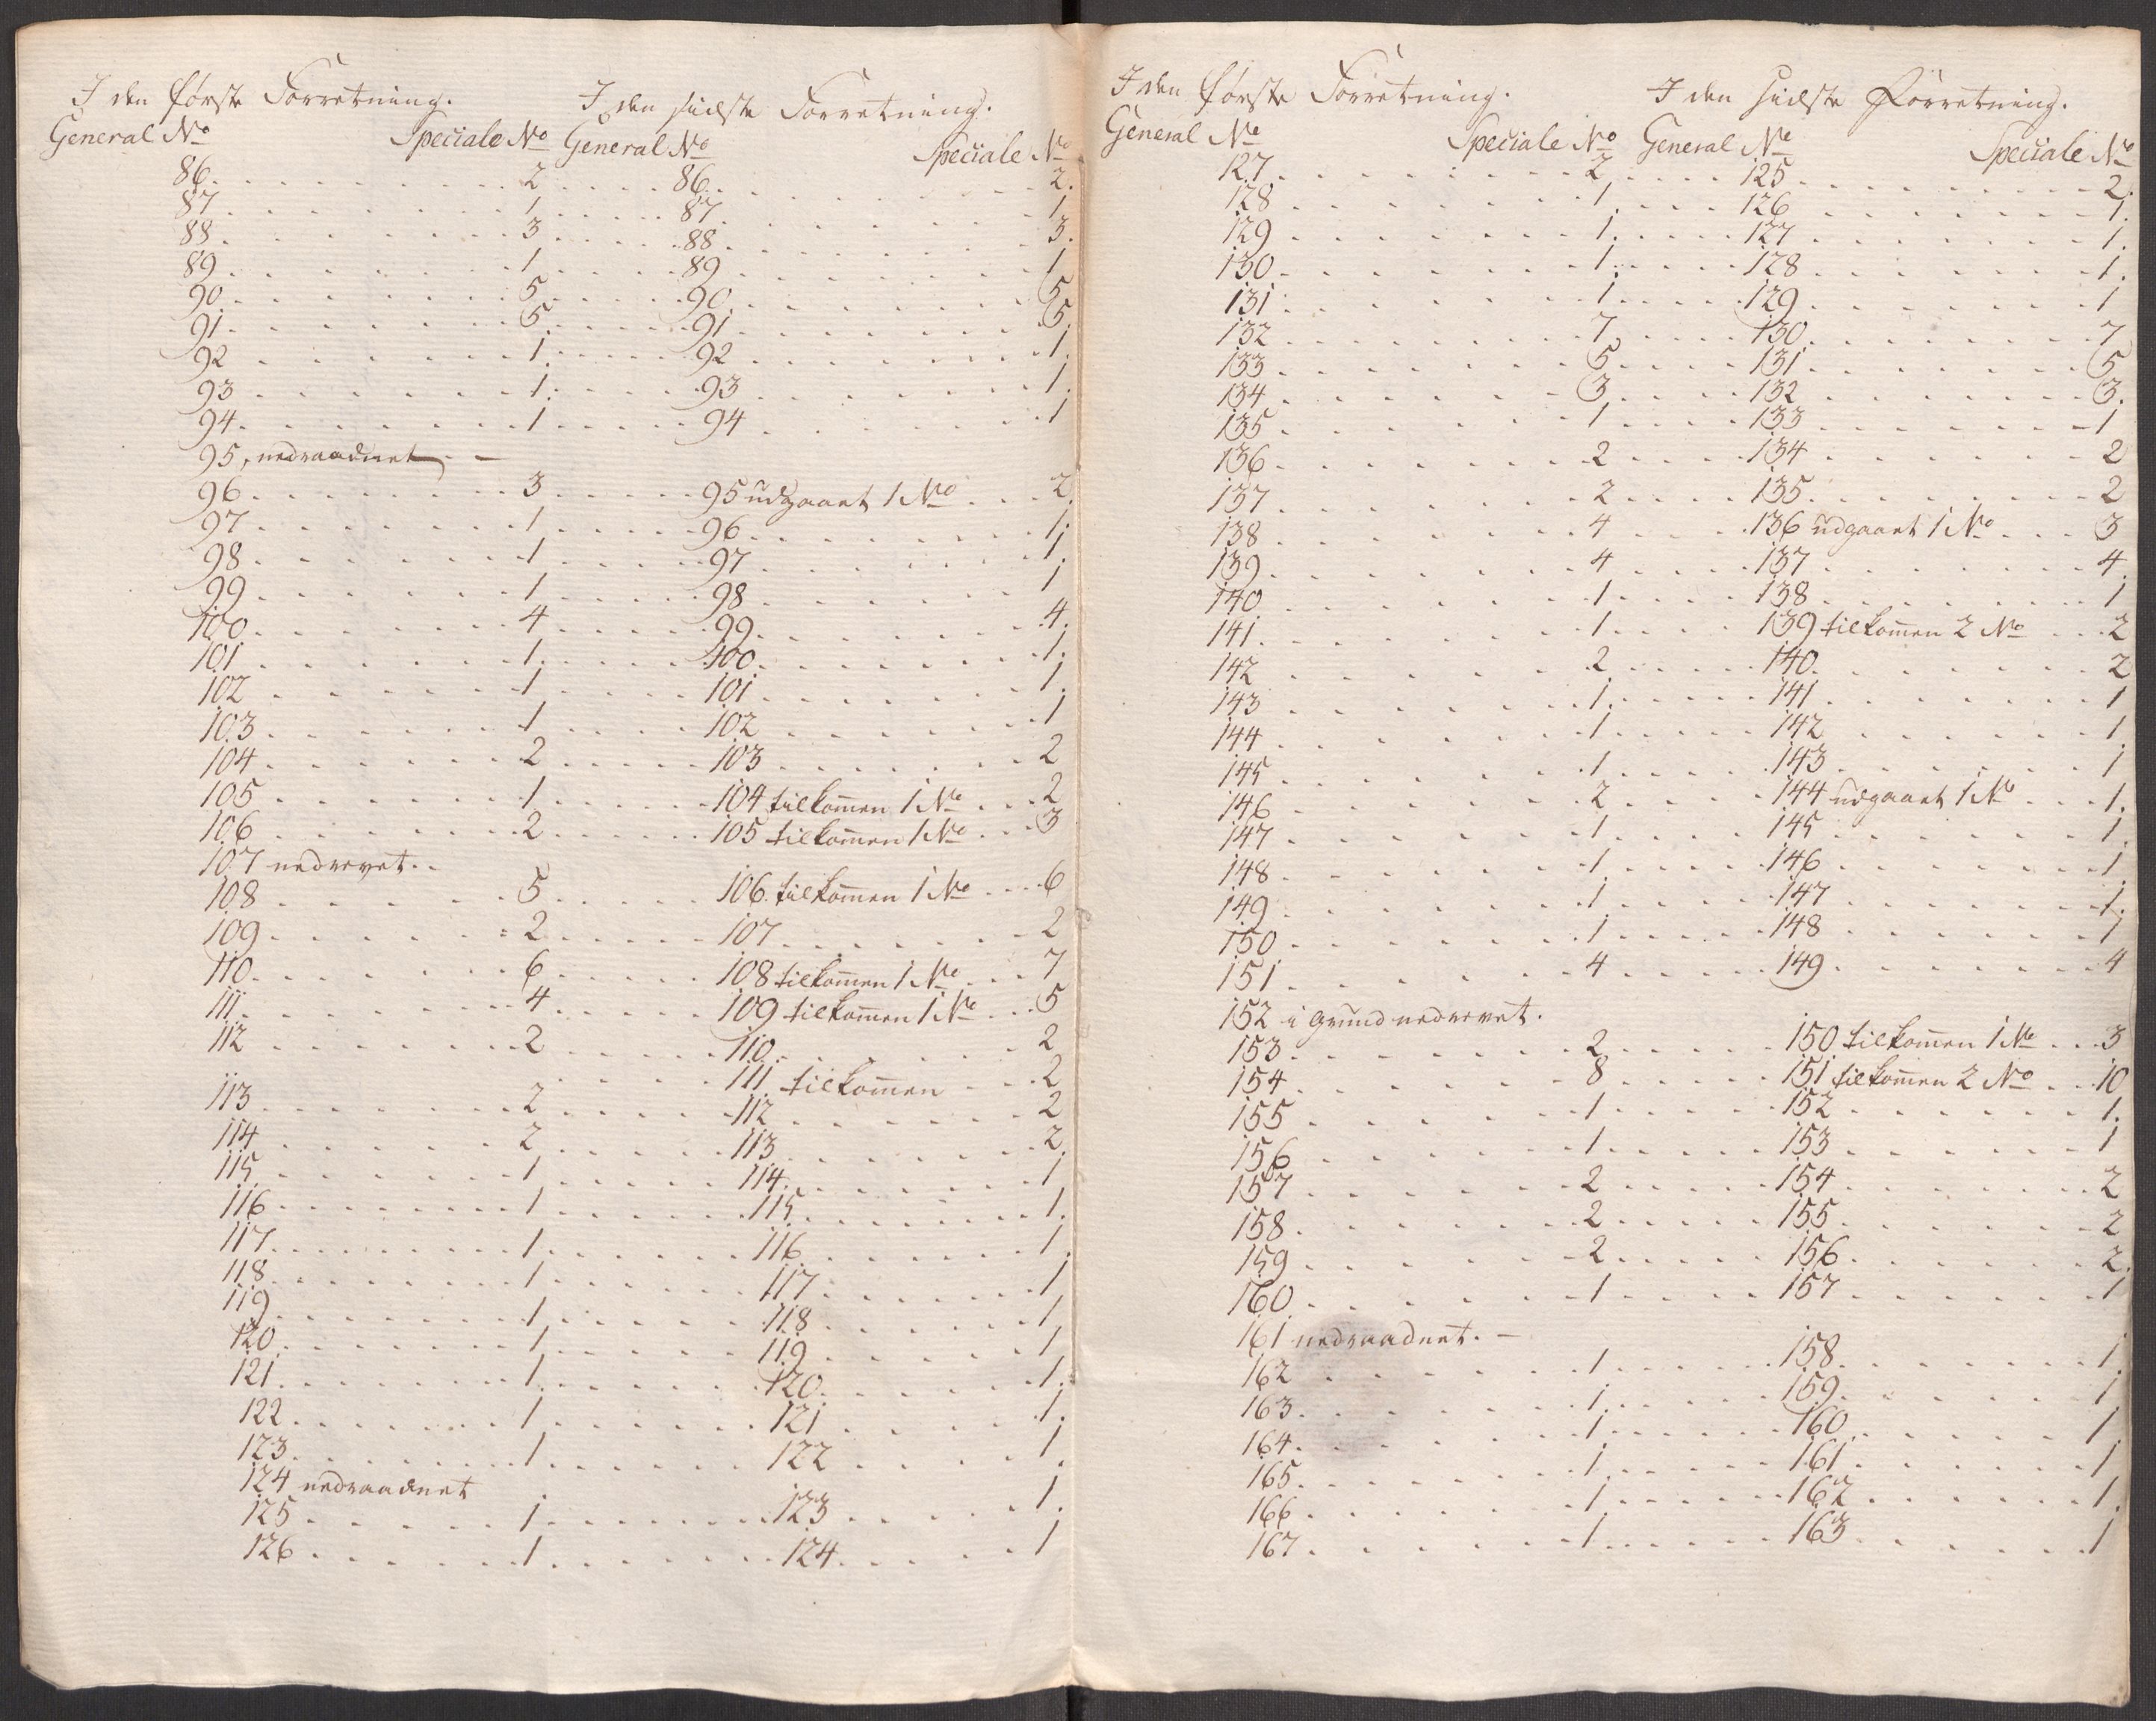 RA, Kommersekollegiet, Brannforsikringskontoret 1767-1814, F/Fa/L0039: Molde, 0002: Dokumenter, 1767-1817